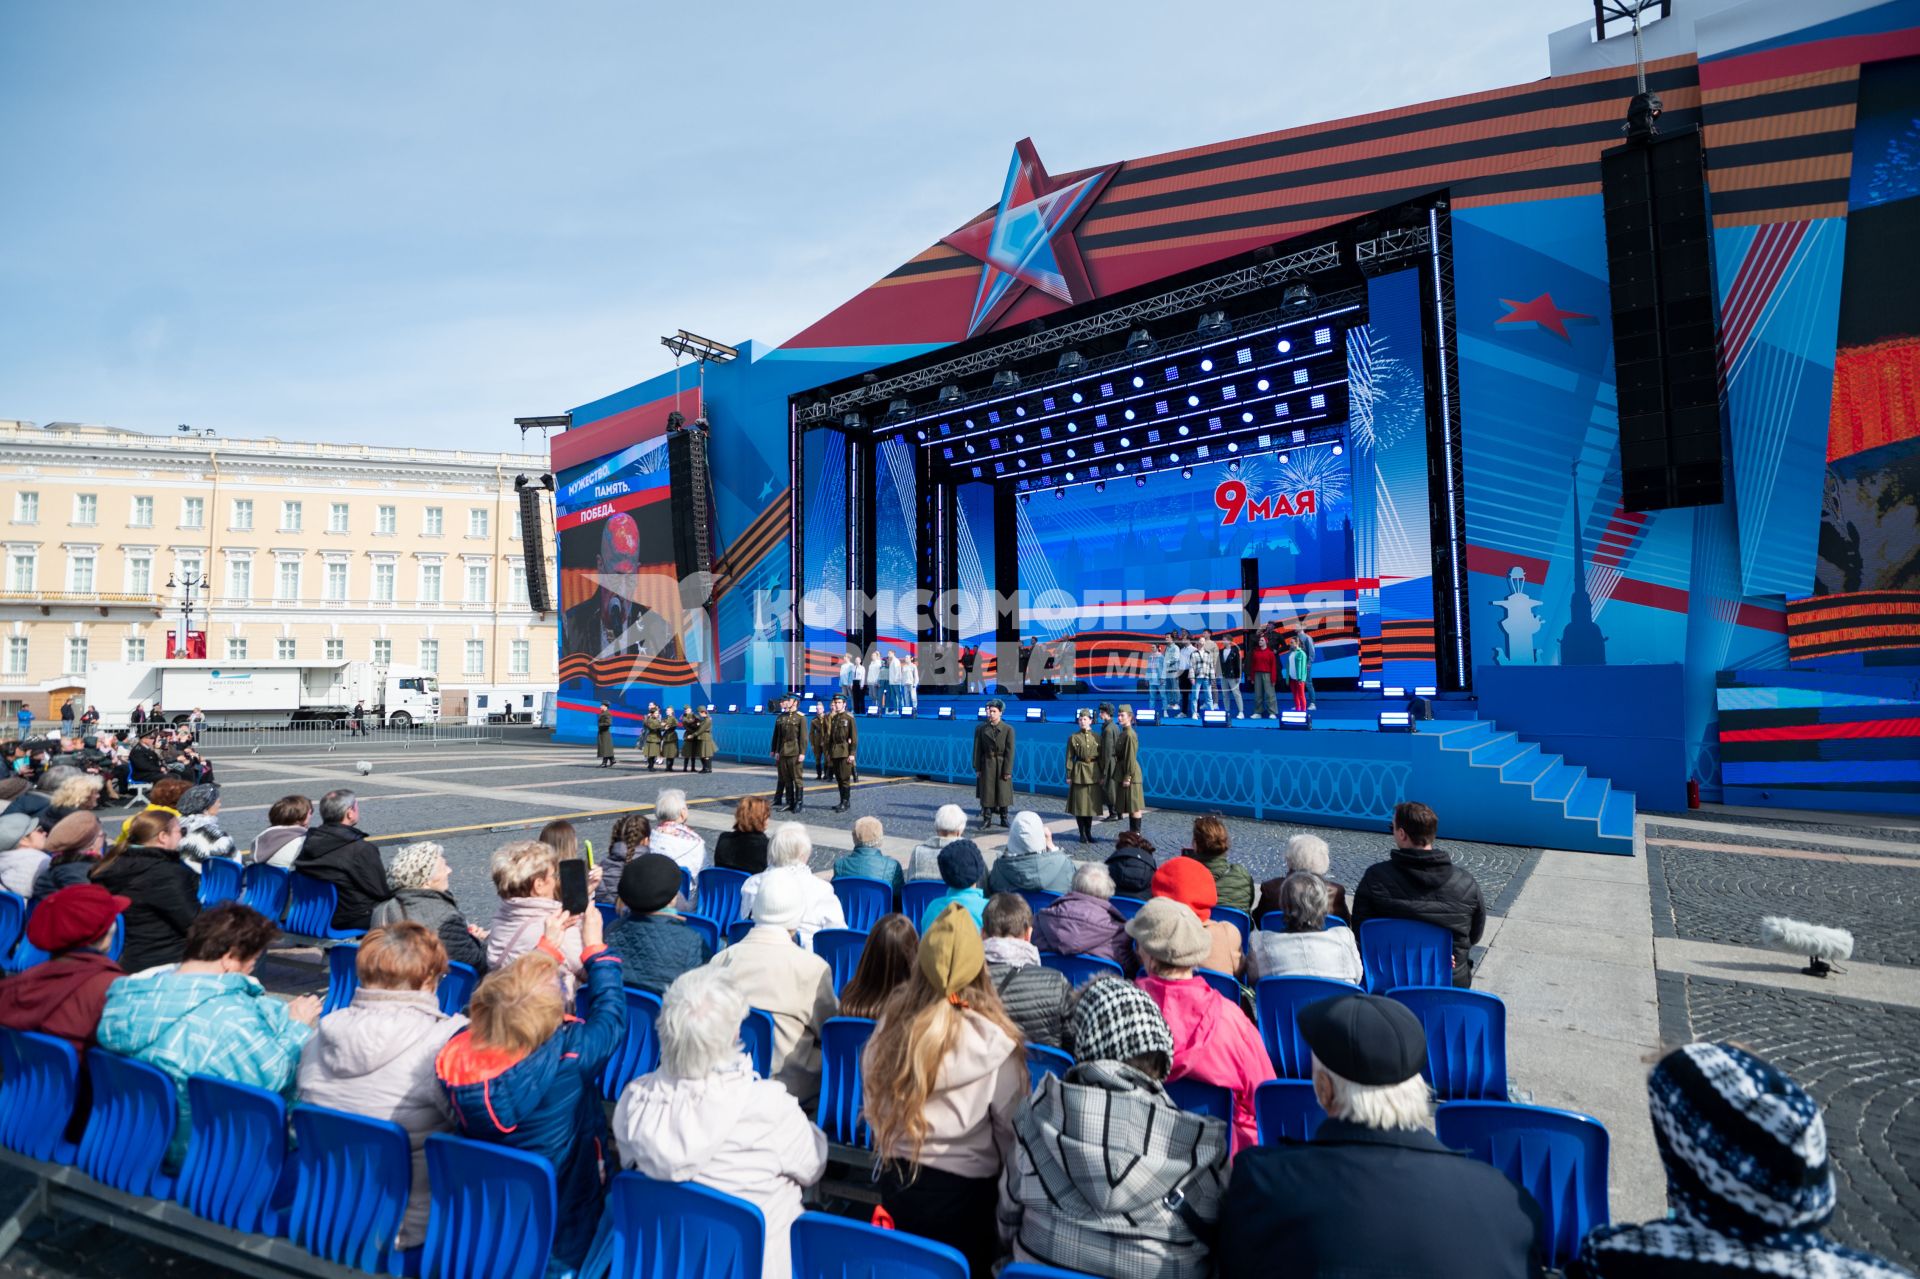 Санкт-Петербург. Певец Александр Розенбаум выступает на концерте, посвященном 78-й годовщине Победы в Великой Отечественной войне на Дворцовой площади.